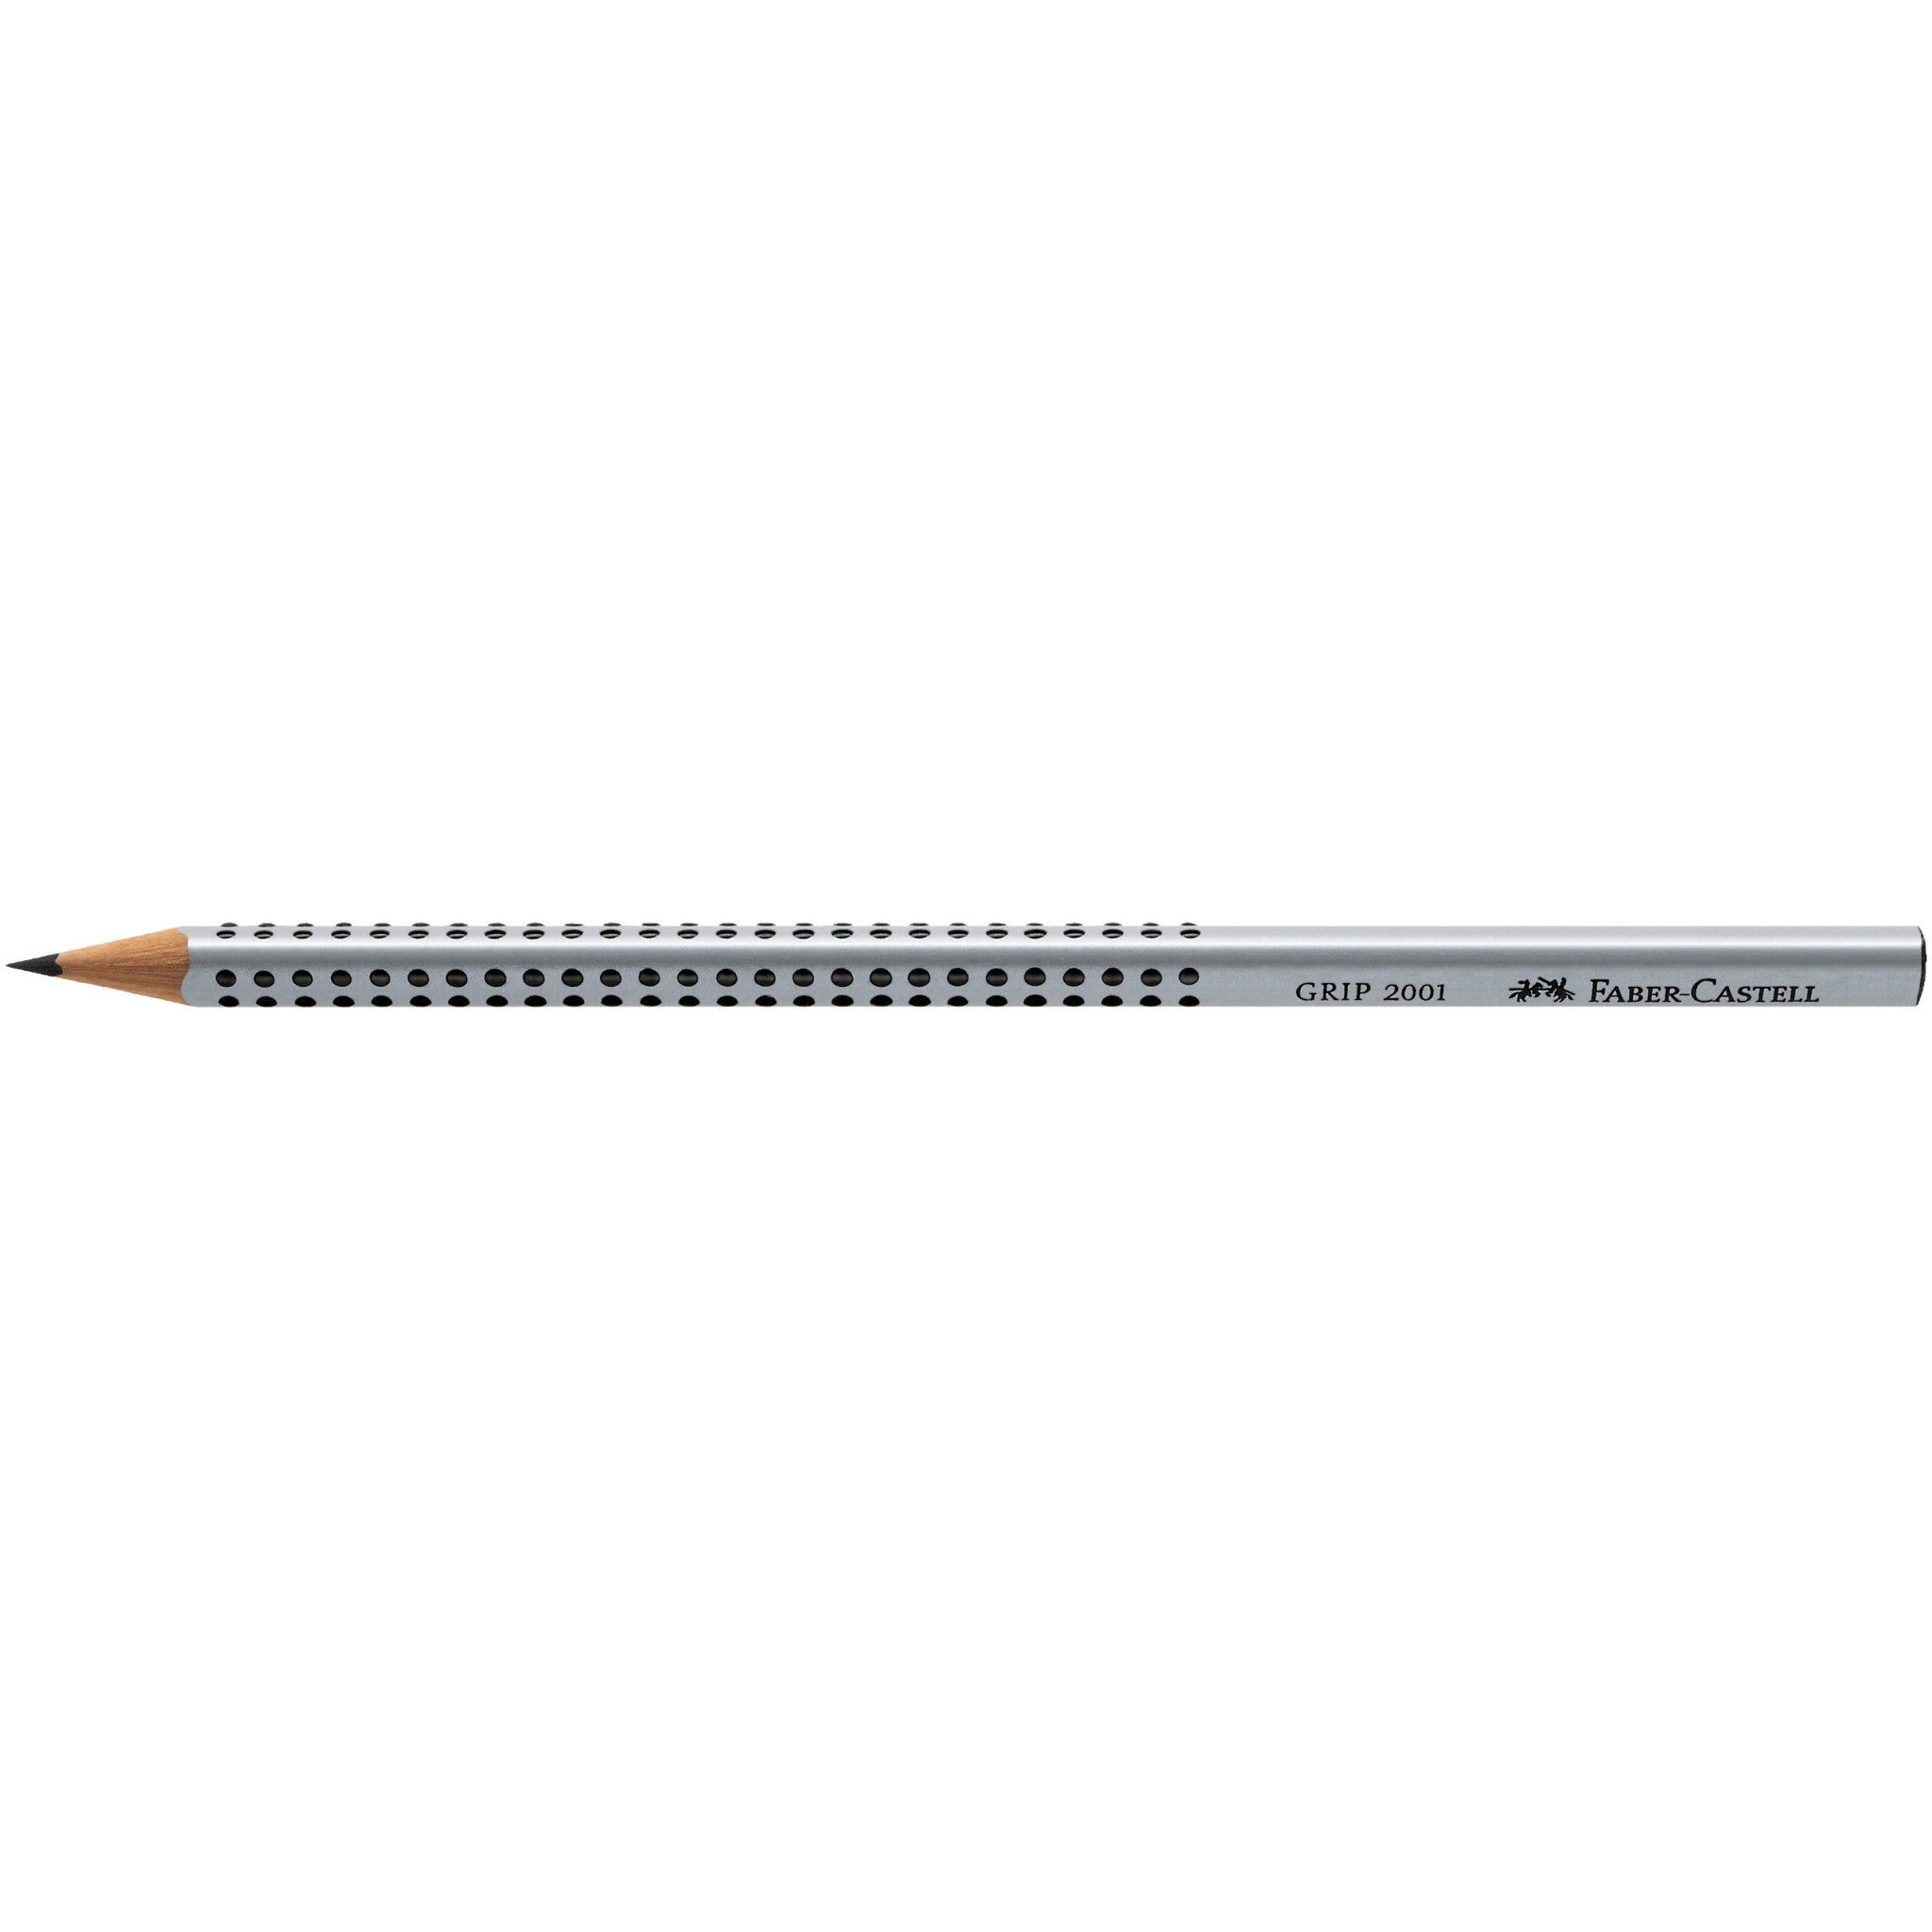 3 graphite pencils, Brown - #118637 – Graf von Faber-Castell